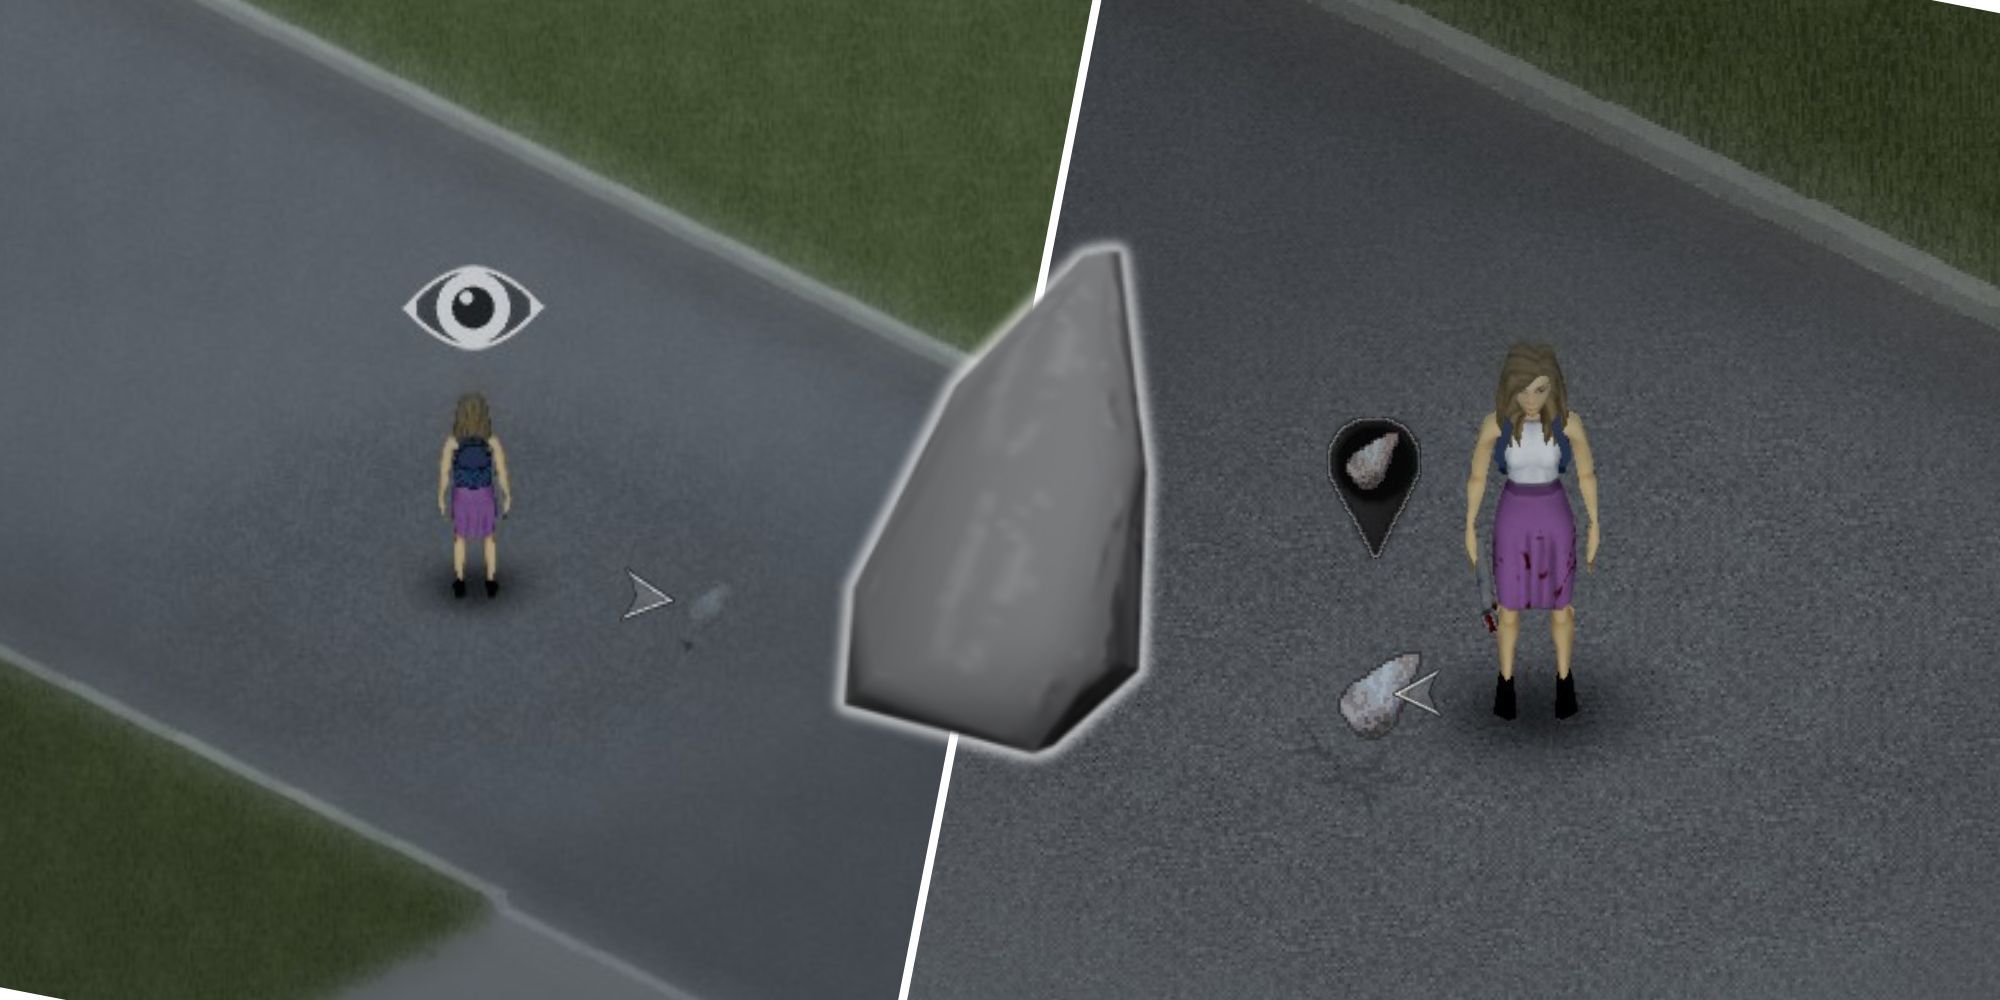 Geteiltes Bild von Project Zomboid, das einen Spieler mit abgebrochenem Stein zeigt